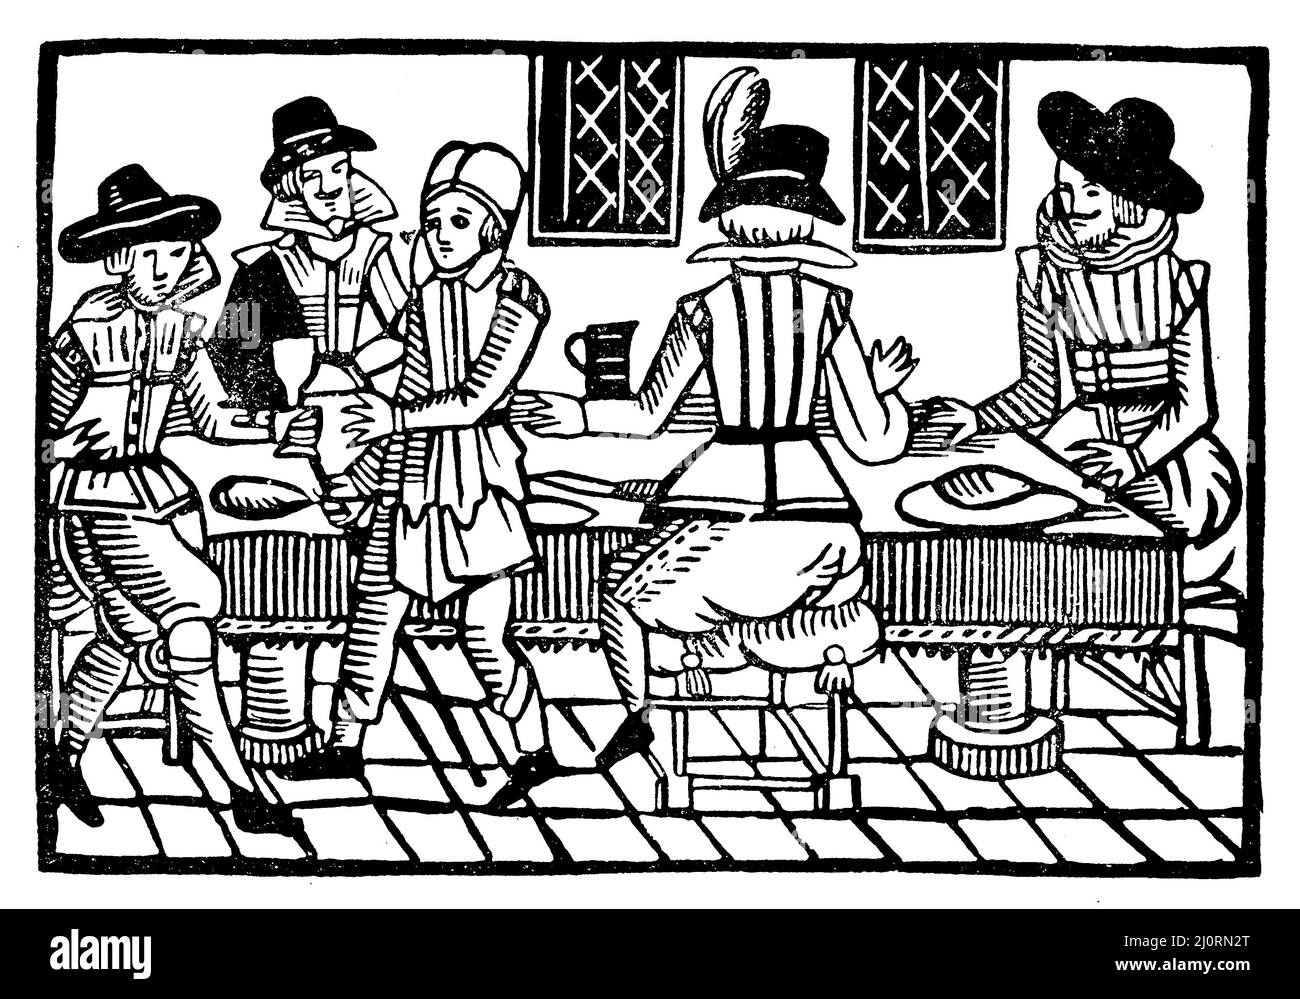 Taverne de Londres au milieu du 17th siècle, , (livre d'histoire culturelle, 1911), Taverne de Londoner dans le Mitte des 17. Jahrhunderts, Taverne londonienne au milieu du 17e siècle Banque D'Images